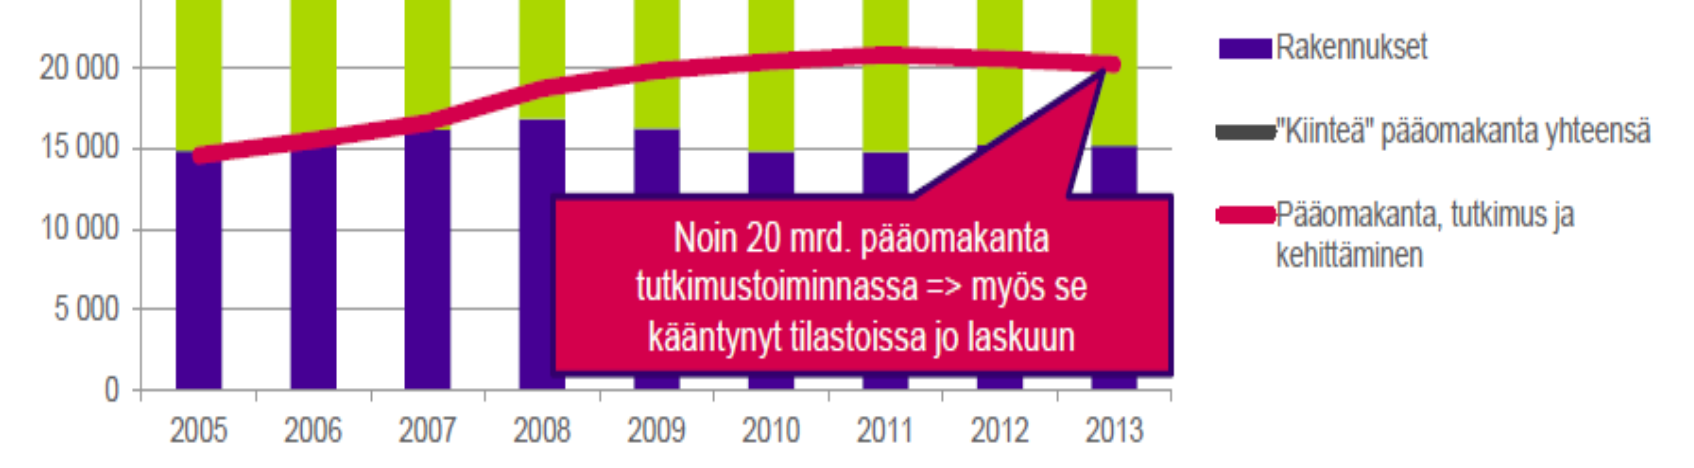 Suomen investointiympäristön parannuttava - teollisuuden pääomakanta ja t&k